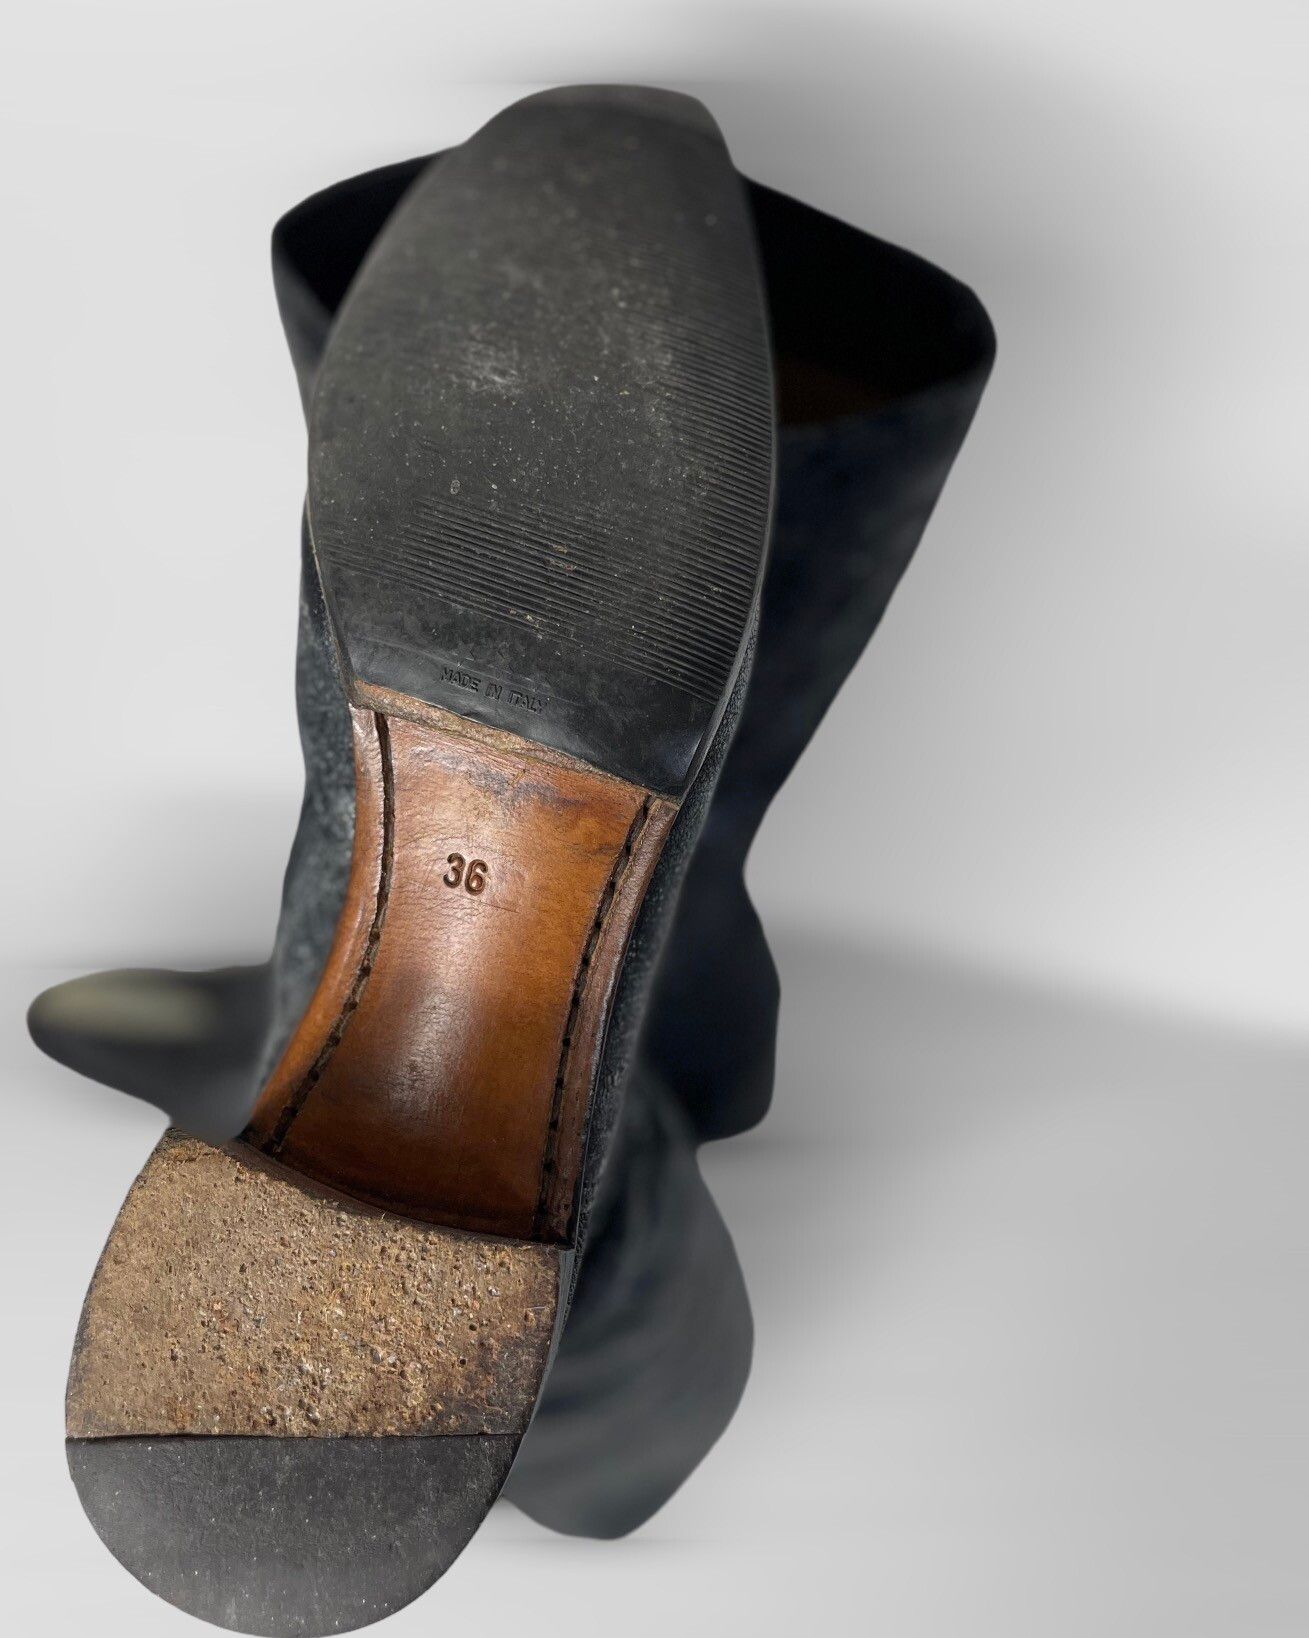 Gianni Barbato Vintage Gianni Barbato cowboy western Boots genuine leather Size US 6 / IT 36 - 6 Thumbnail